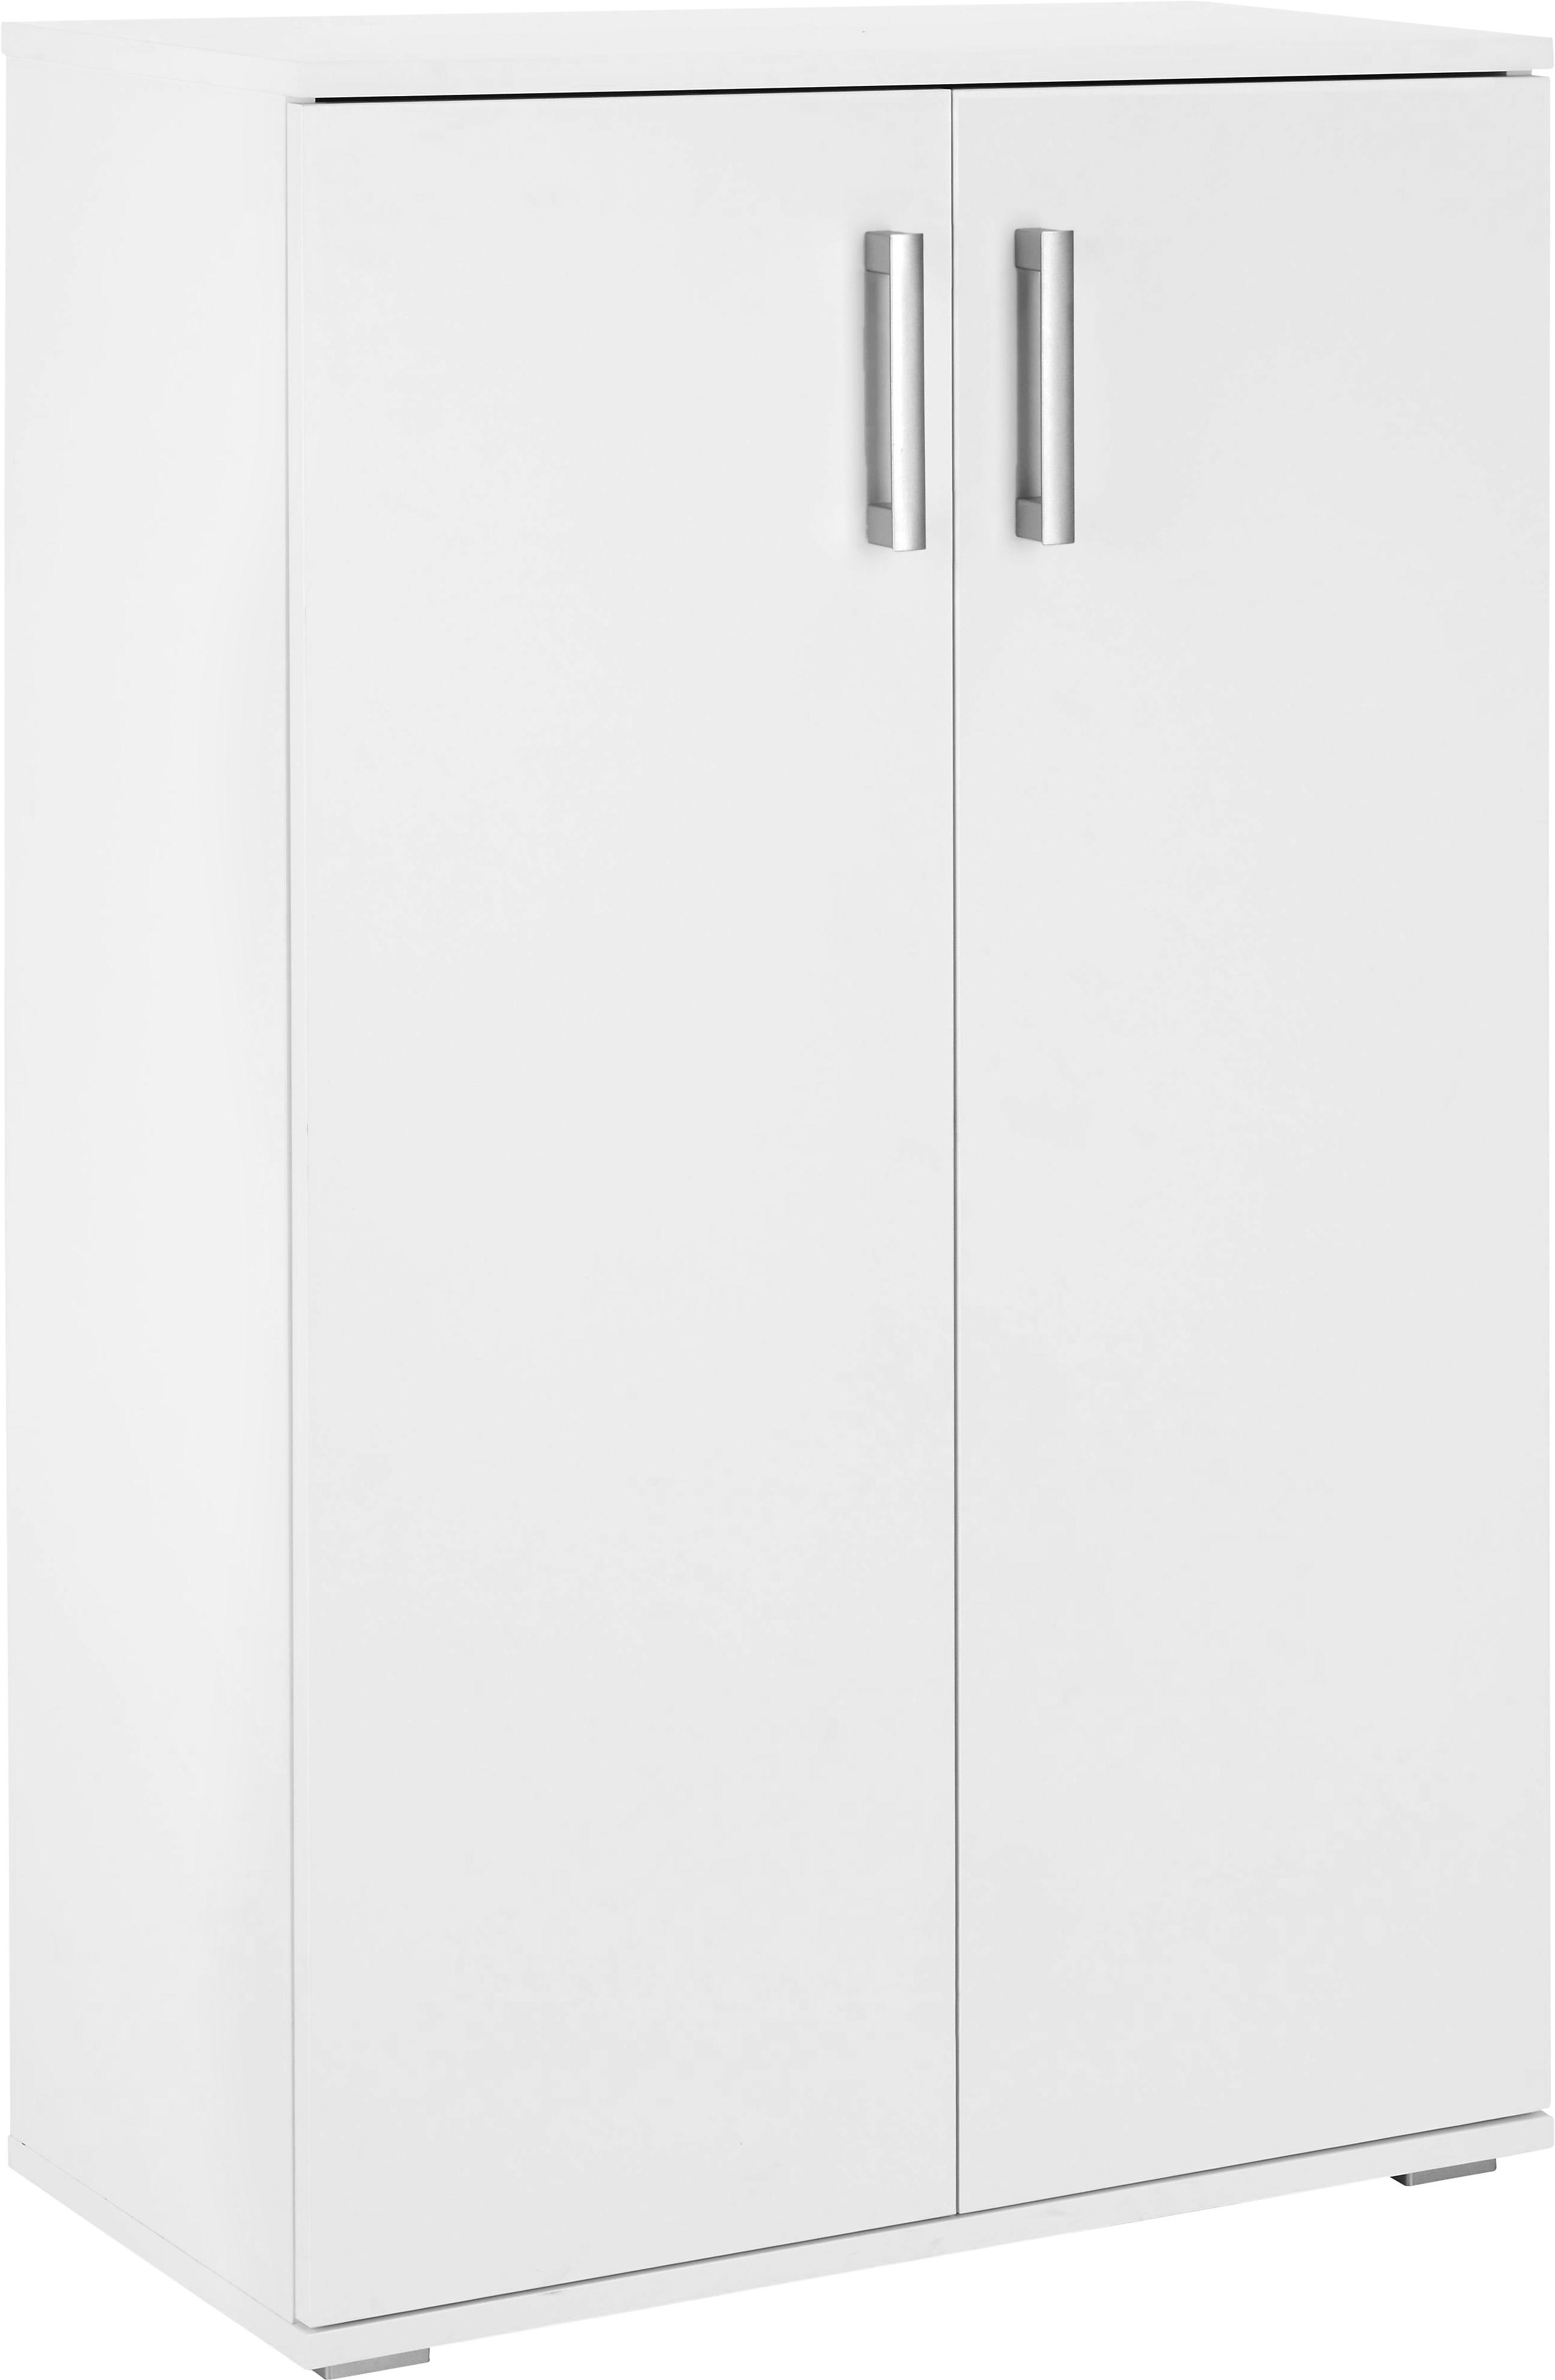 Schuhschrank in Weiß - Alufarben/Weiß, MODERN, Holzwerkstoff/Kunststoff (70/106/34cm) - Modern Living